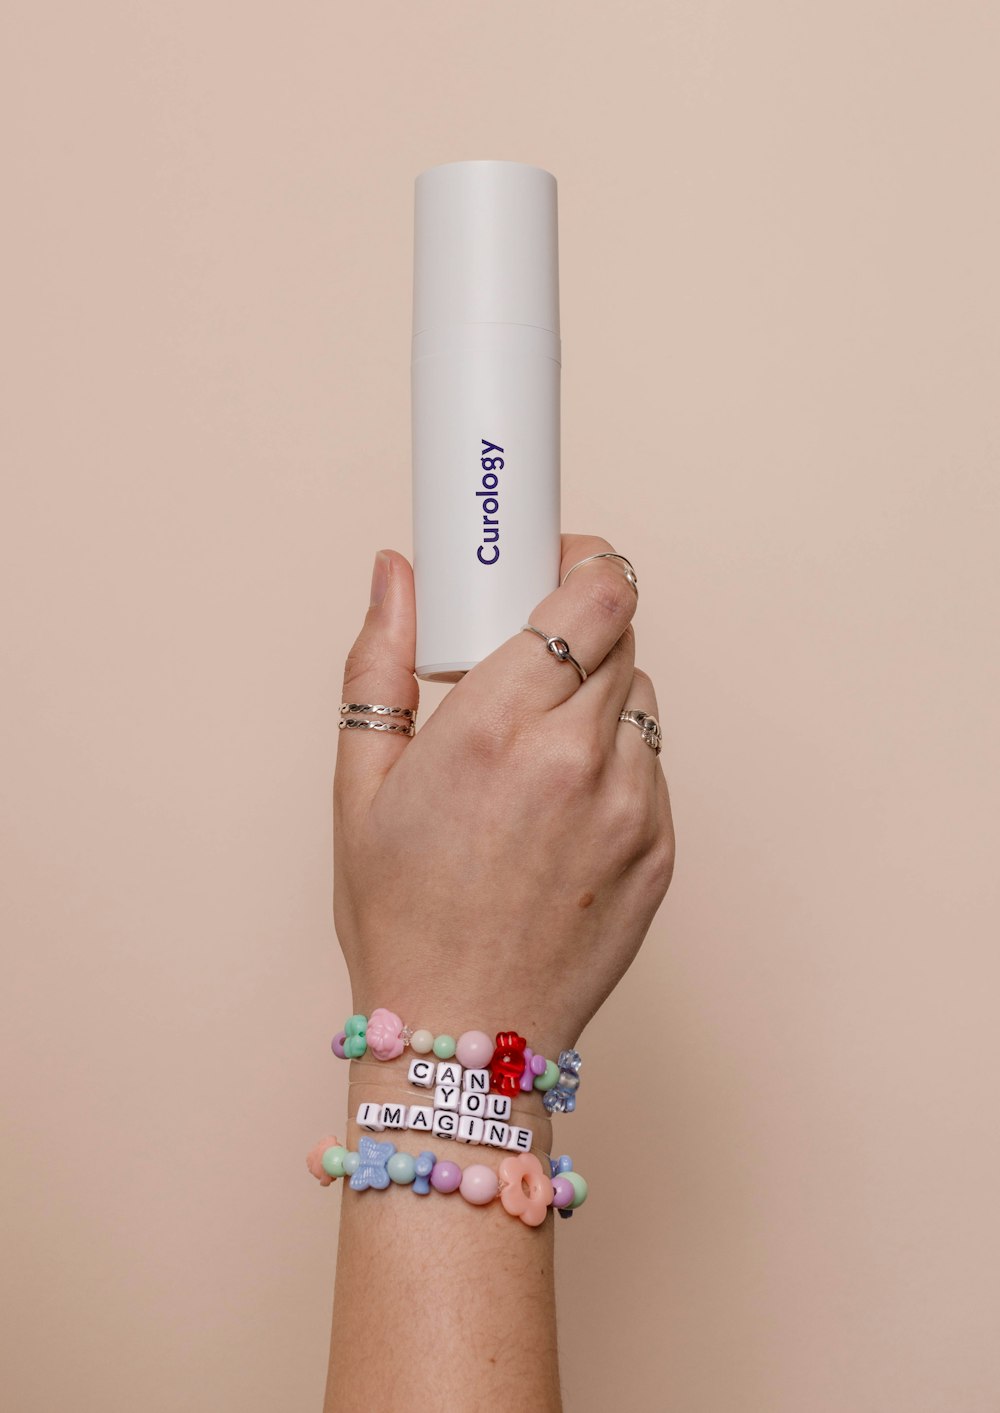 una persona sosteniendo un tubo blanco en la mano